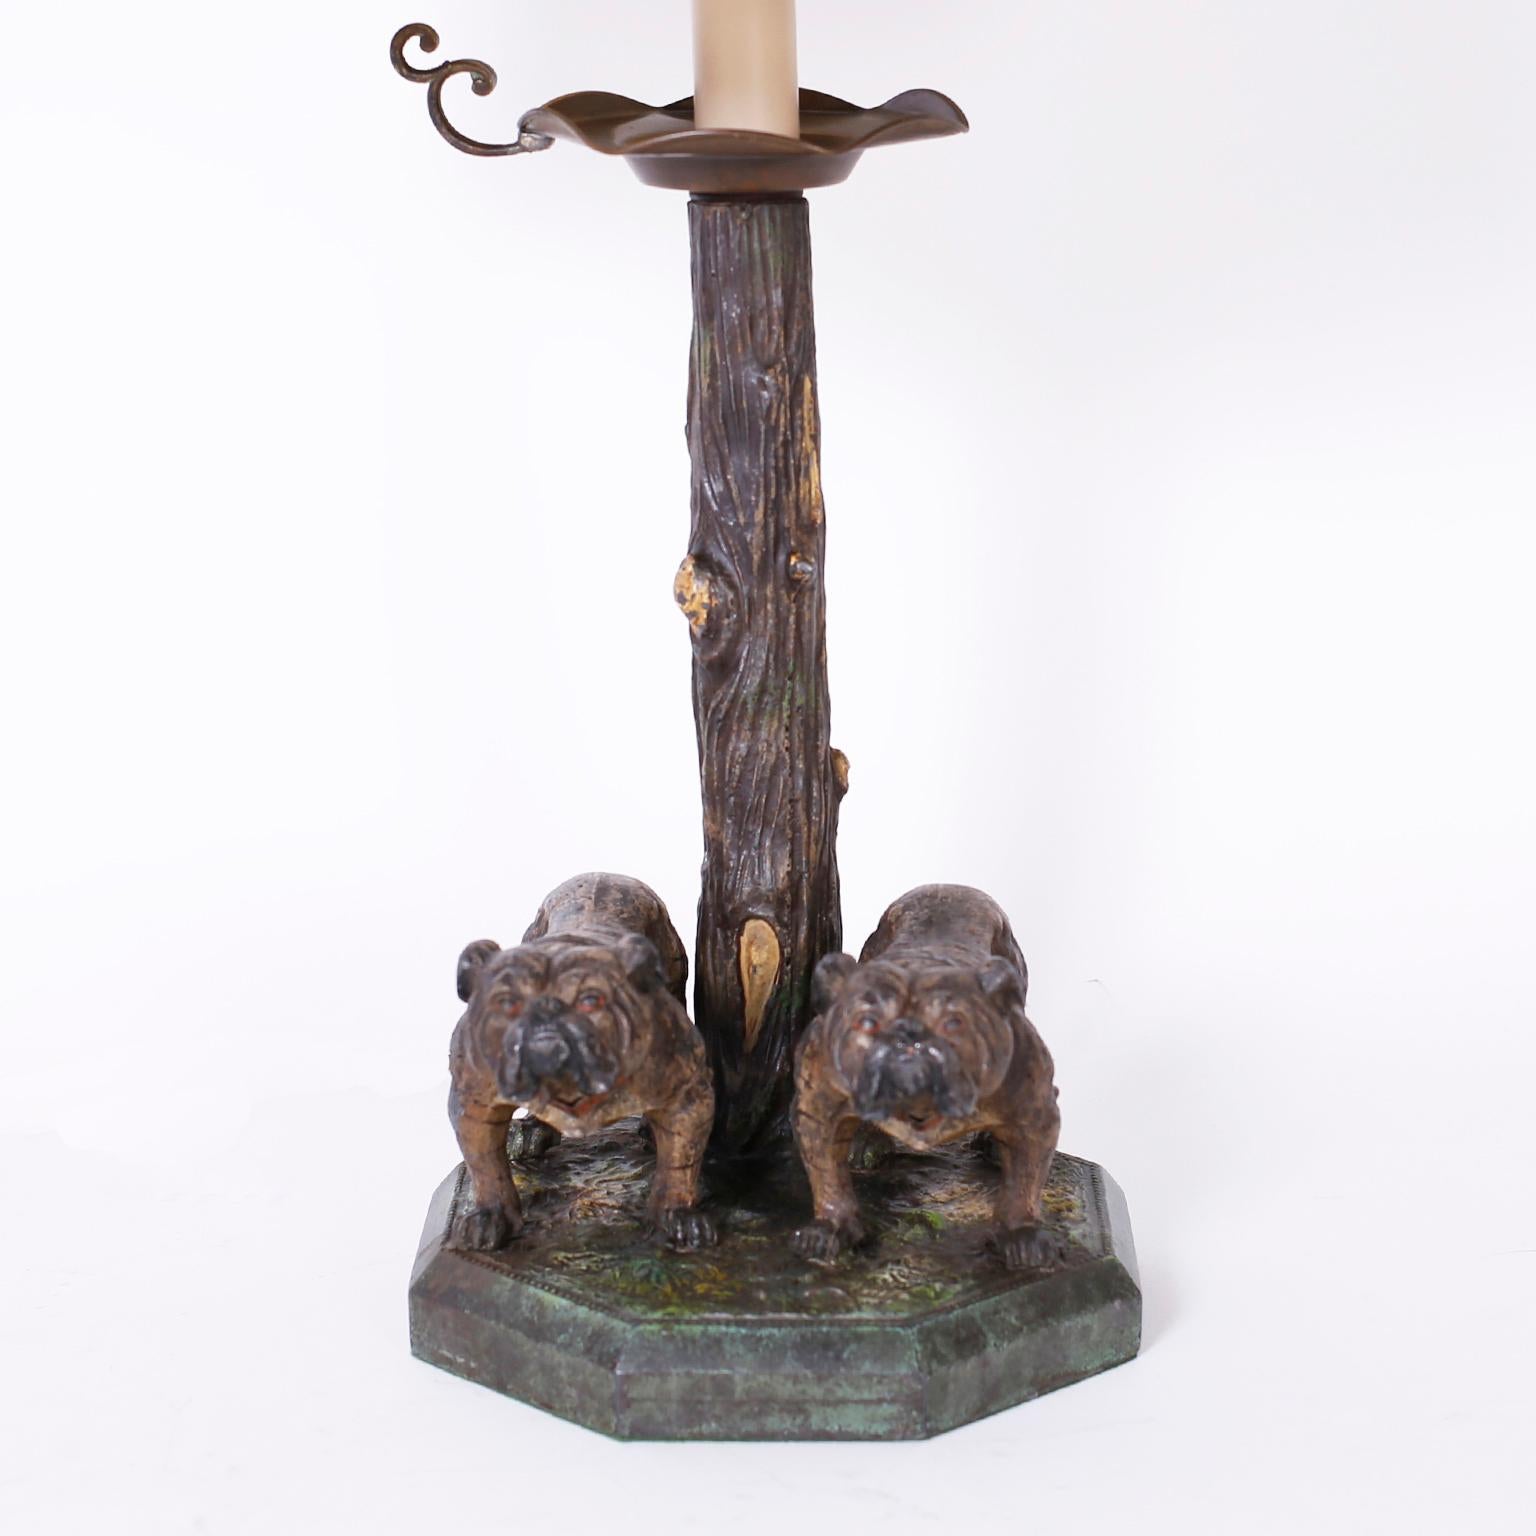 Beeindruckende antike Tischlampe aus Bronze mit Kaltlackierung und erworbener Patina, die zwei Bulldoggen und einen Baum auf einem achteckigen Sockel darstellt.